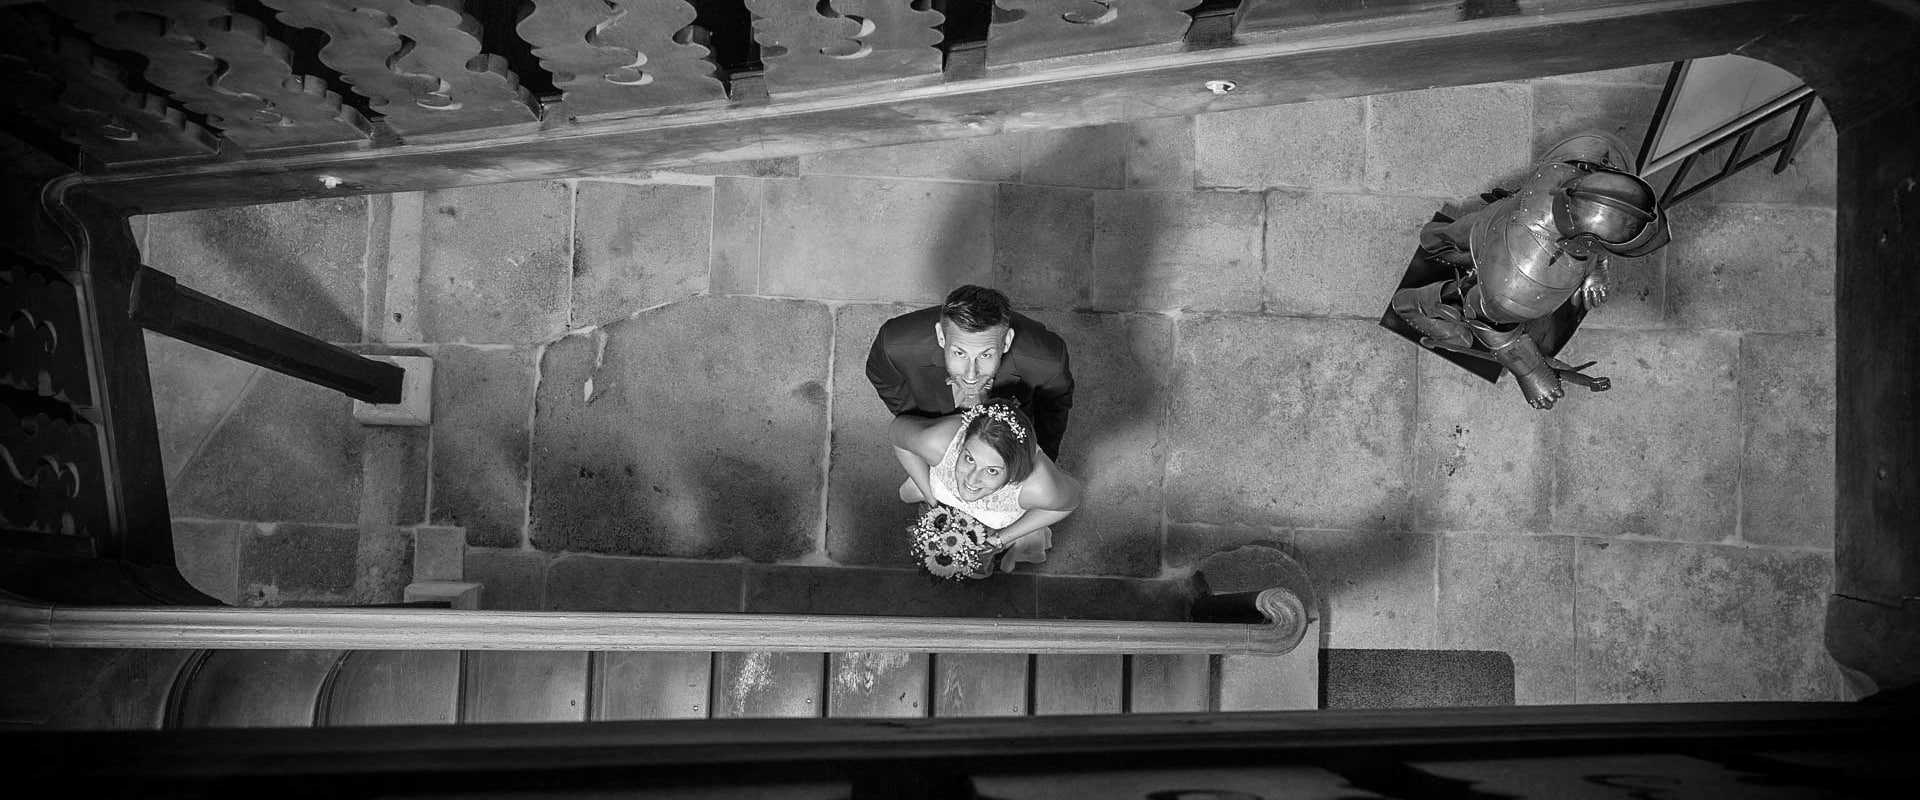 hochzeitsfotograf aus schwaebisch hall - sichtbare momente - brautpaar im treppenhaus von oben fotografiert